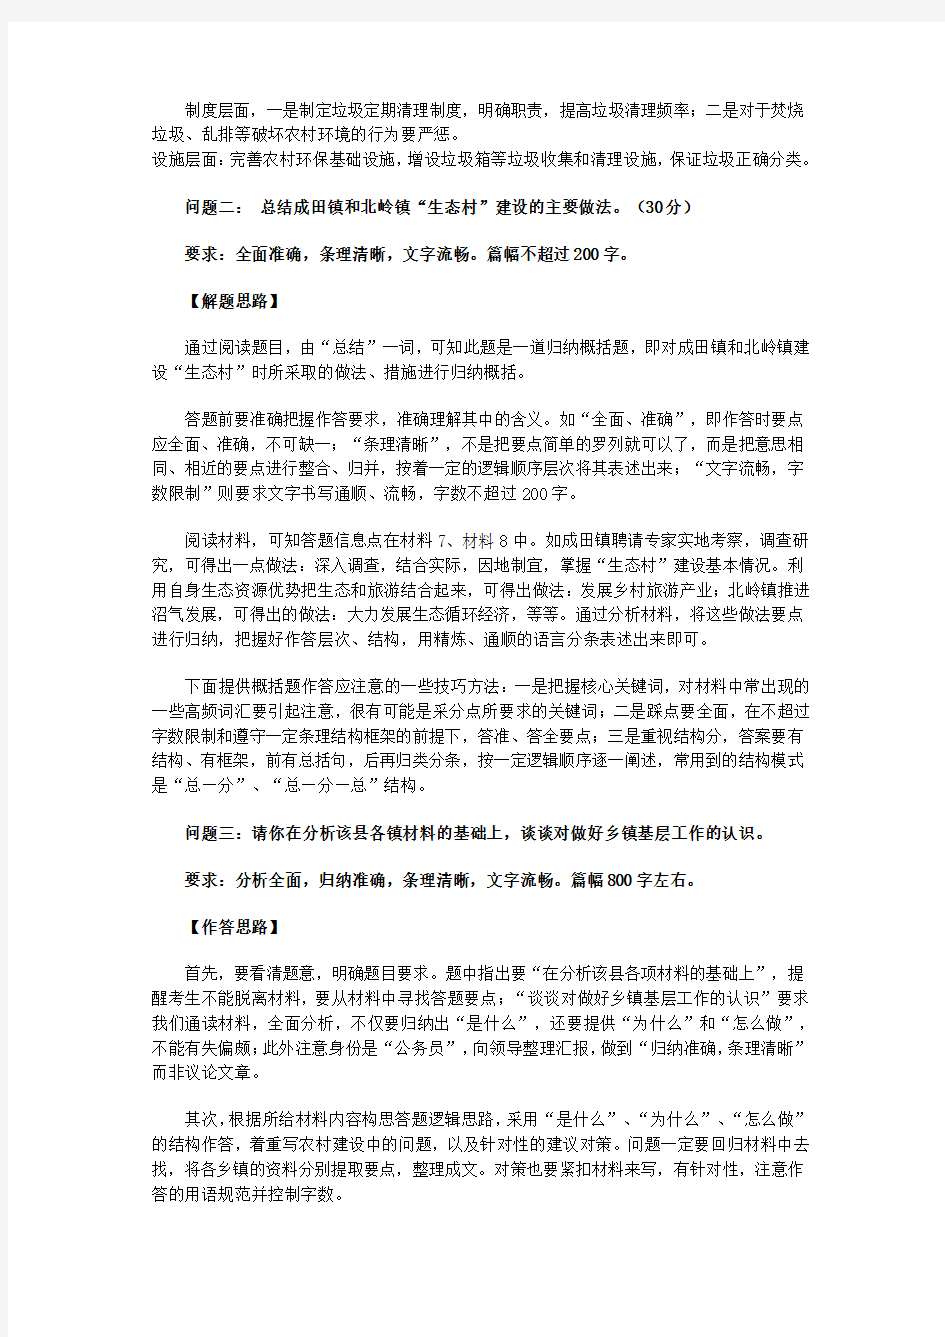 2012年广东省乡镇公务员考试申论(二)参考答案及解析